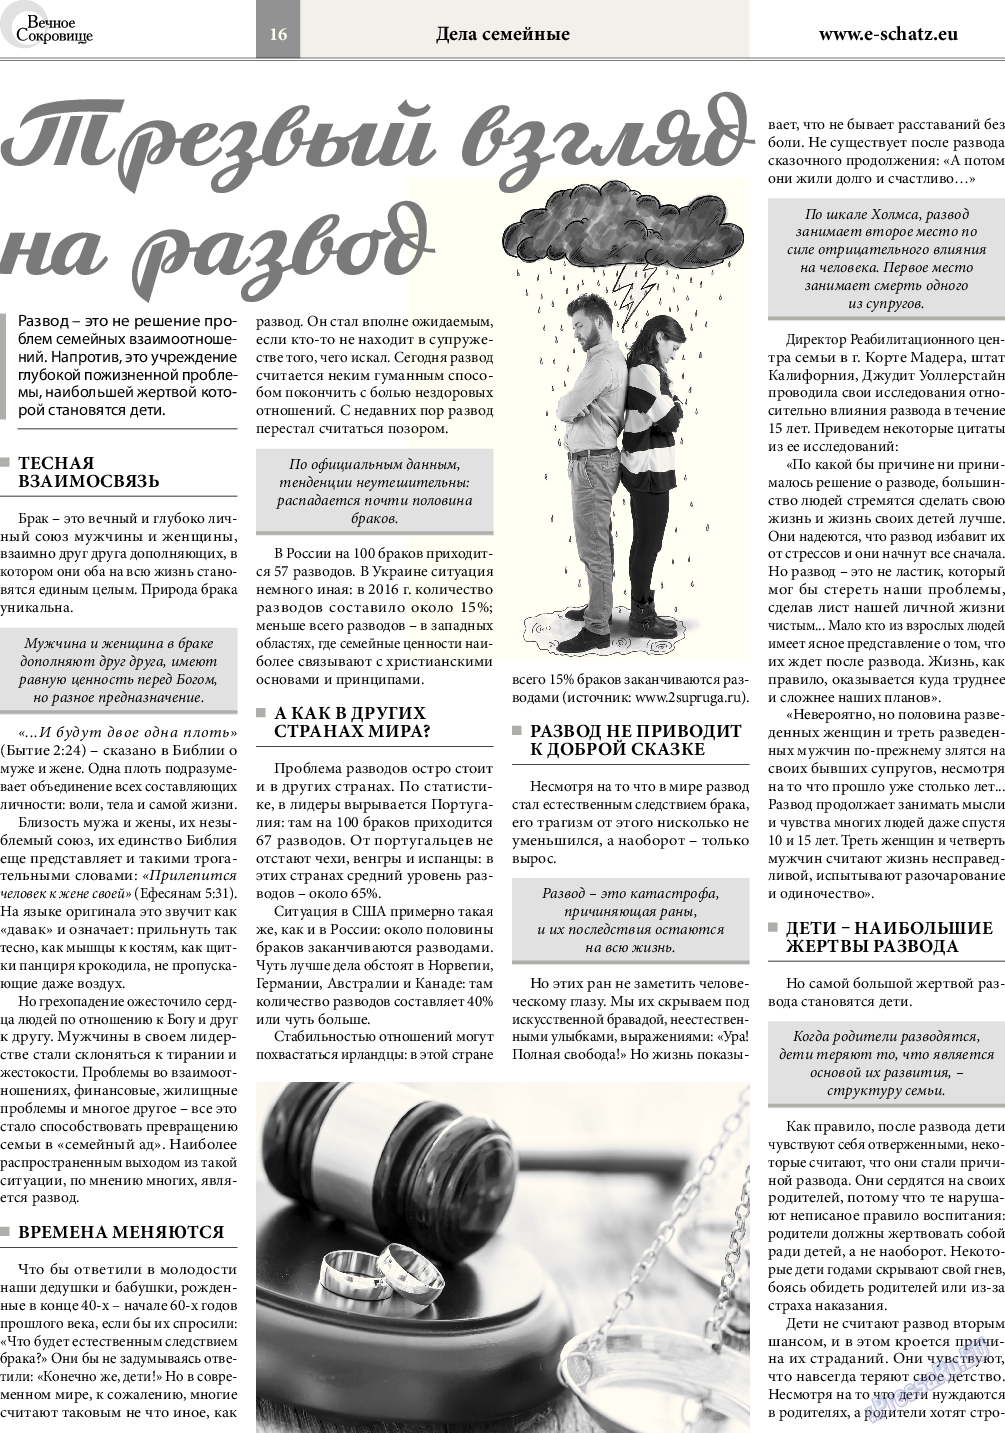 Вечное сокровище, газета. 2017 №3 стр.16